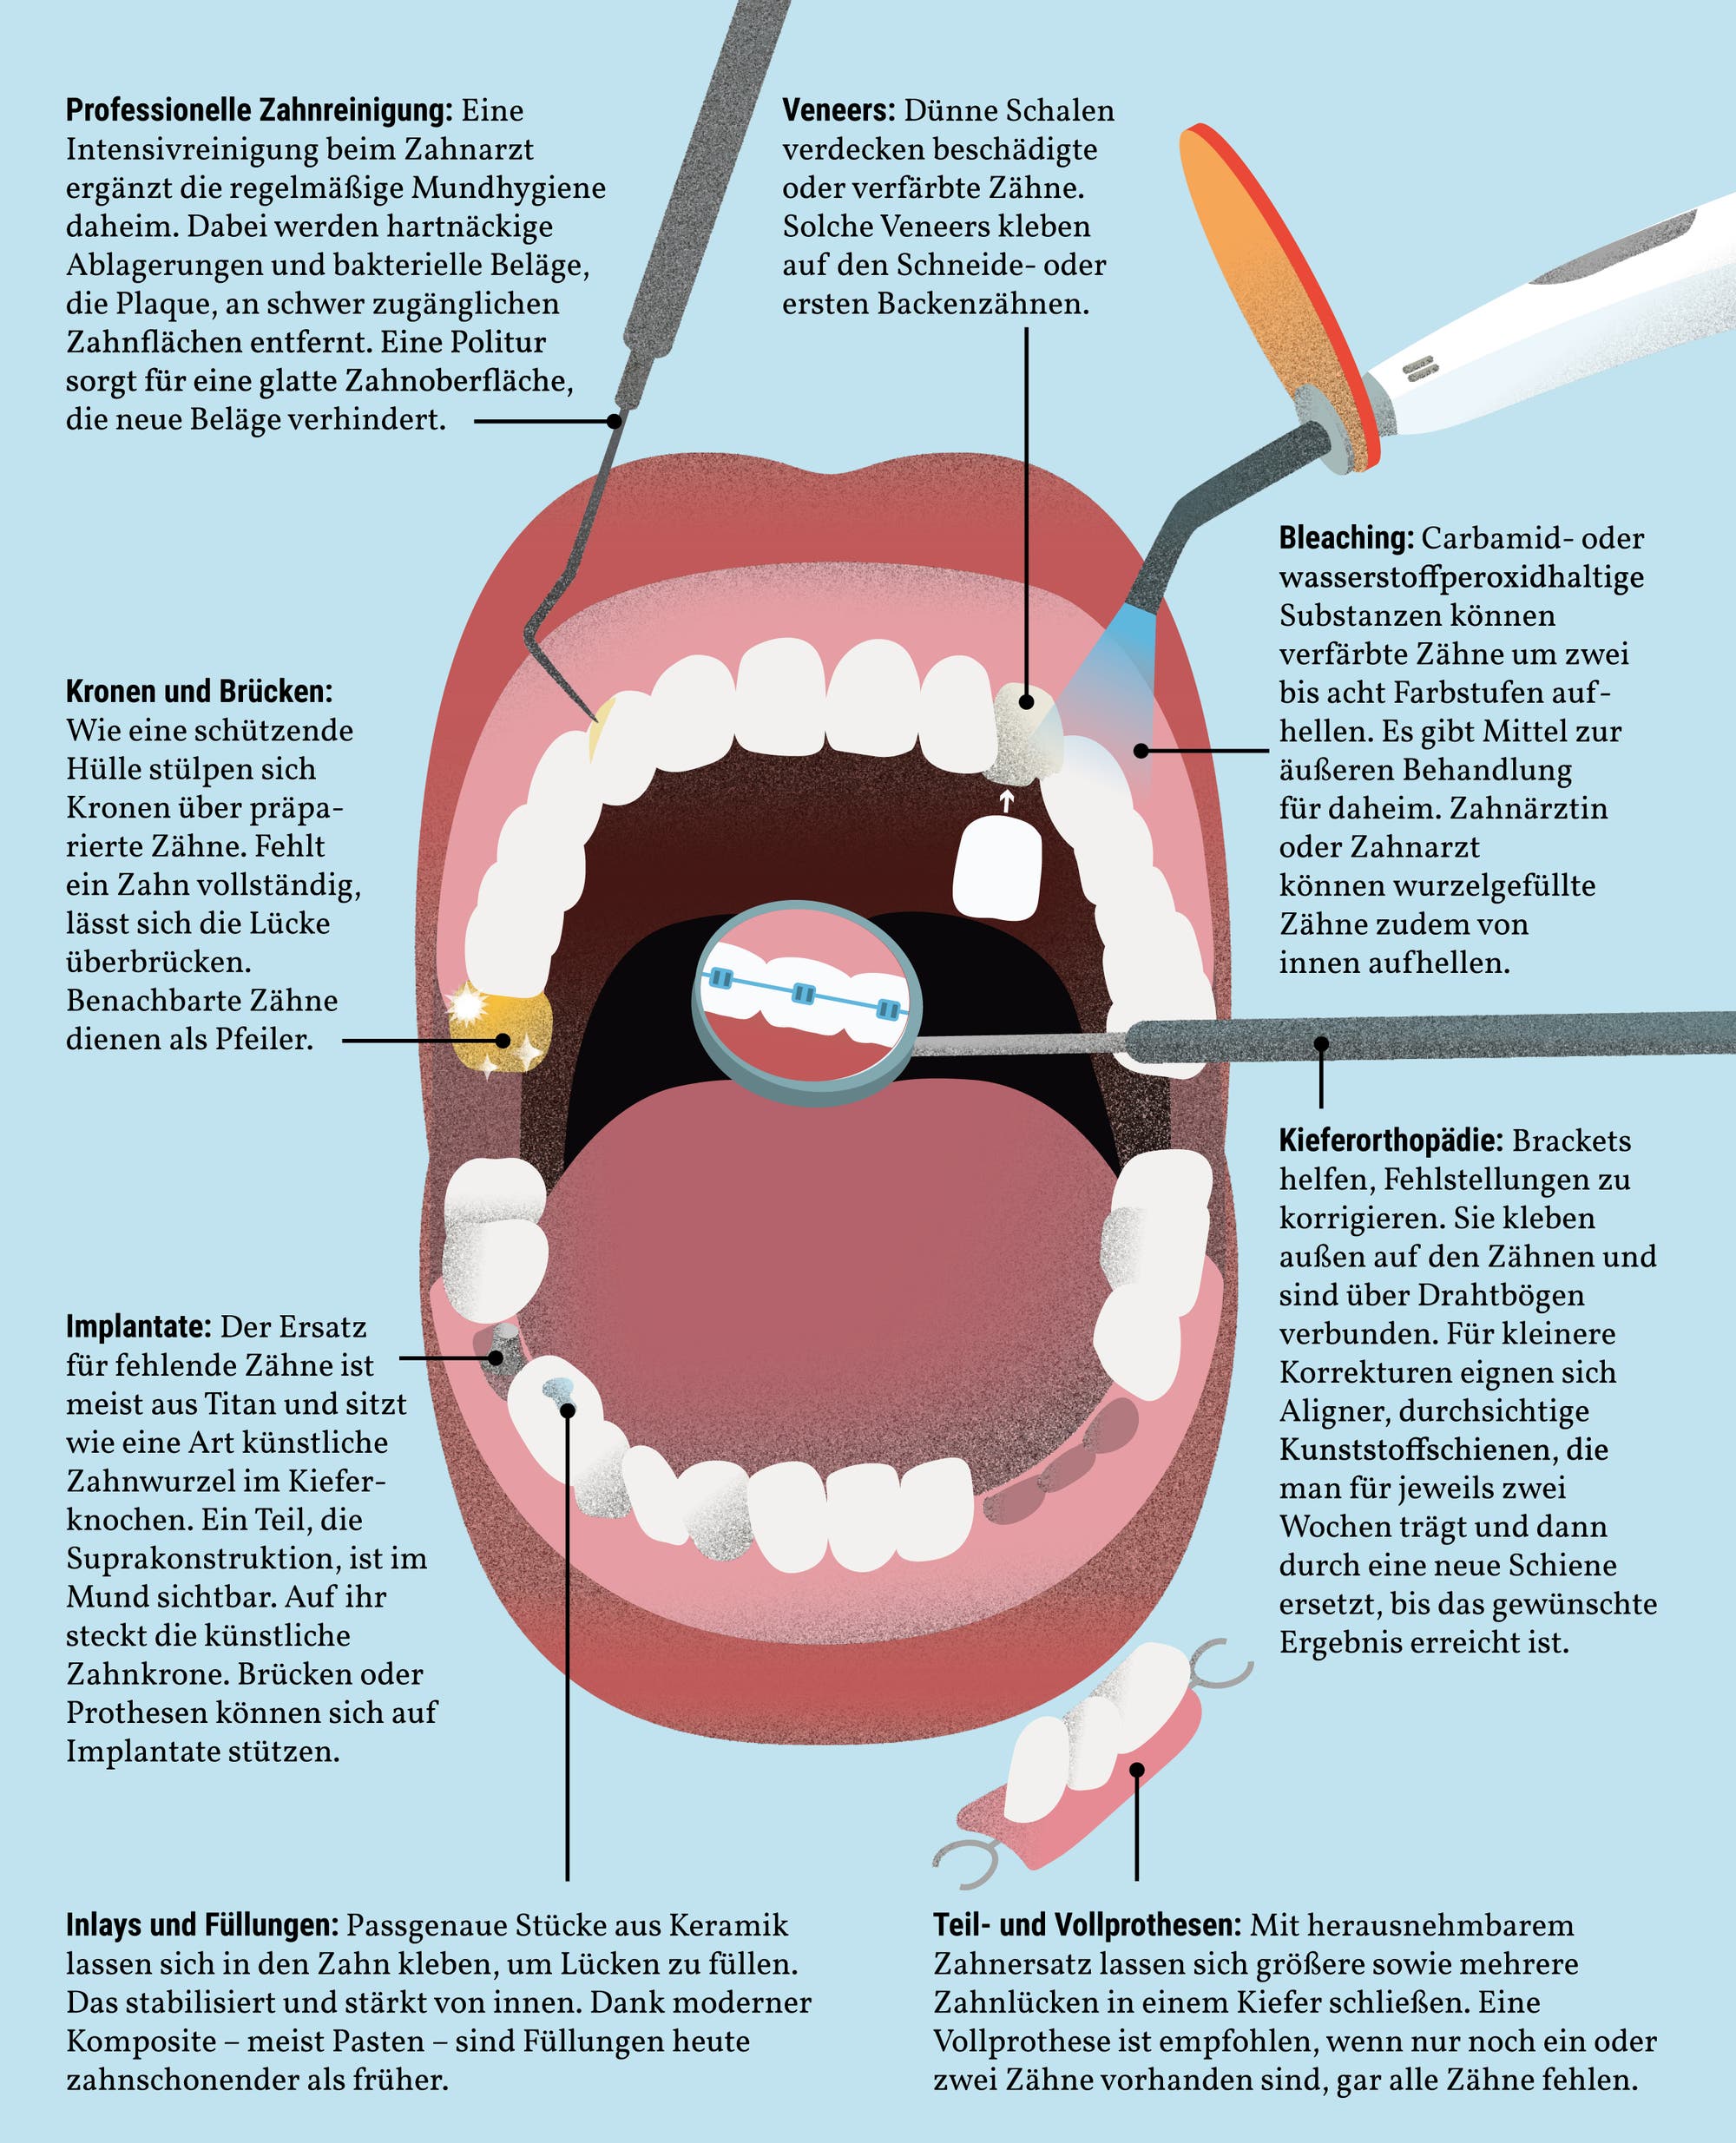 Professionelle Zahnreinigung und Veneers sind zwei Möglichkeiten, um Zähne zu reparieren und verschönern, wie die Grafik zeigt.